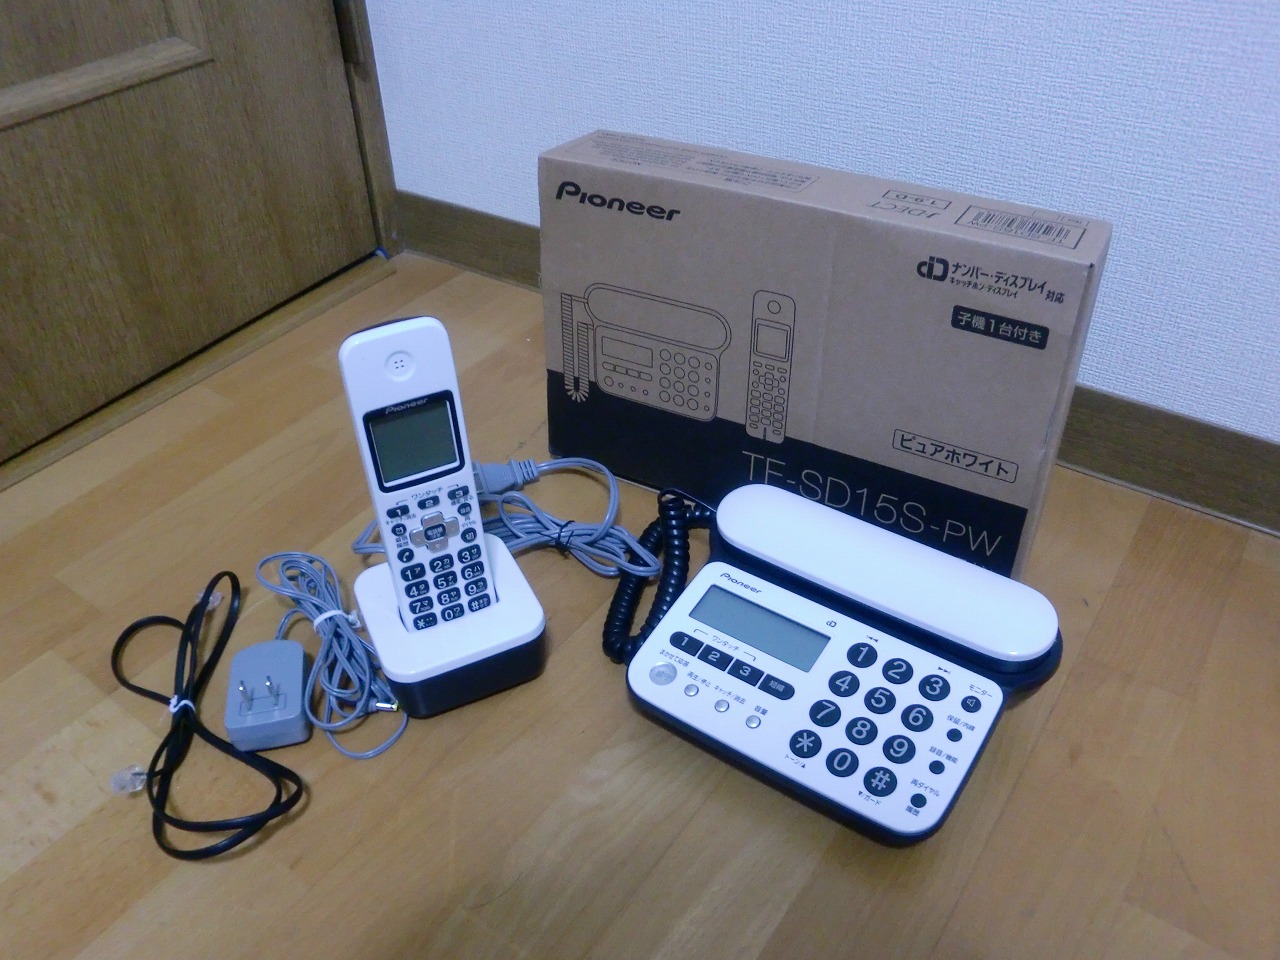 生活家電 その他 Pioneer TF-SD15S-PW デジタルコードレス 電話機 子機 1台 TF-EK35-PW 